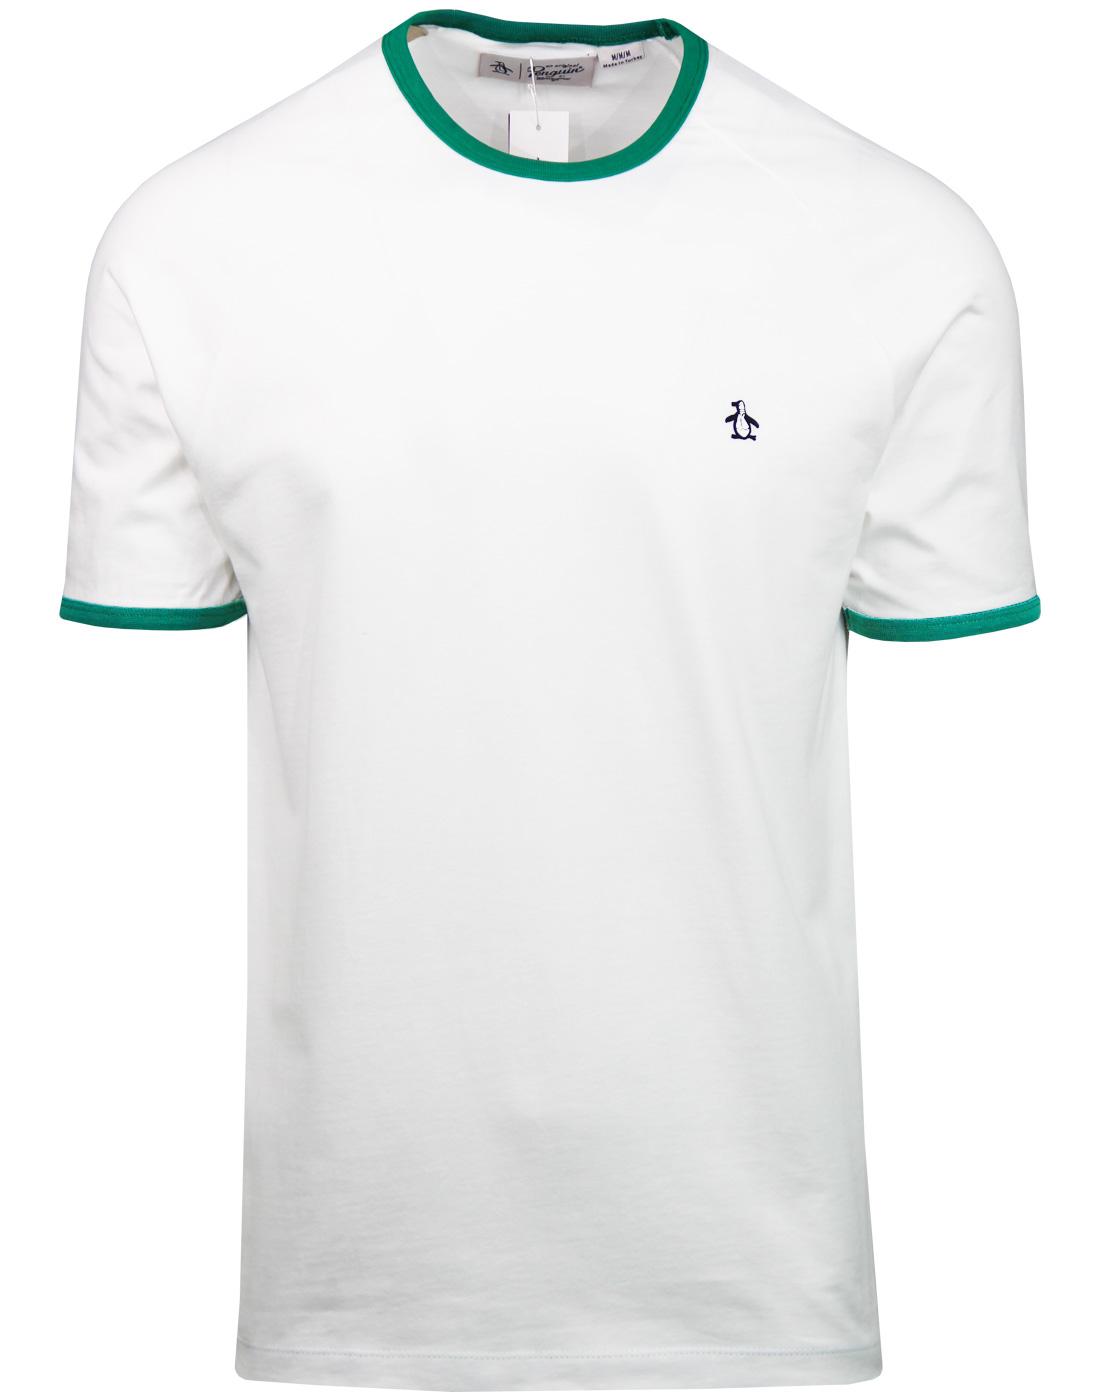 ORIGINAL PENGUIN Retro Ringer T-shirt WHITE/GREEN